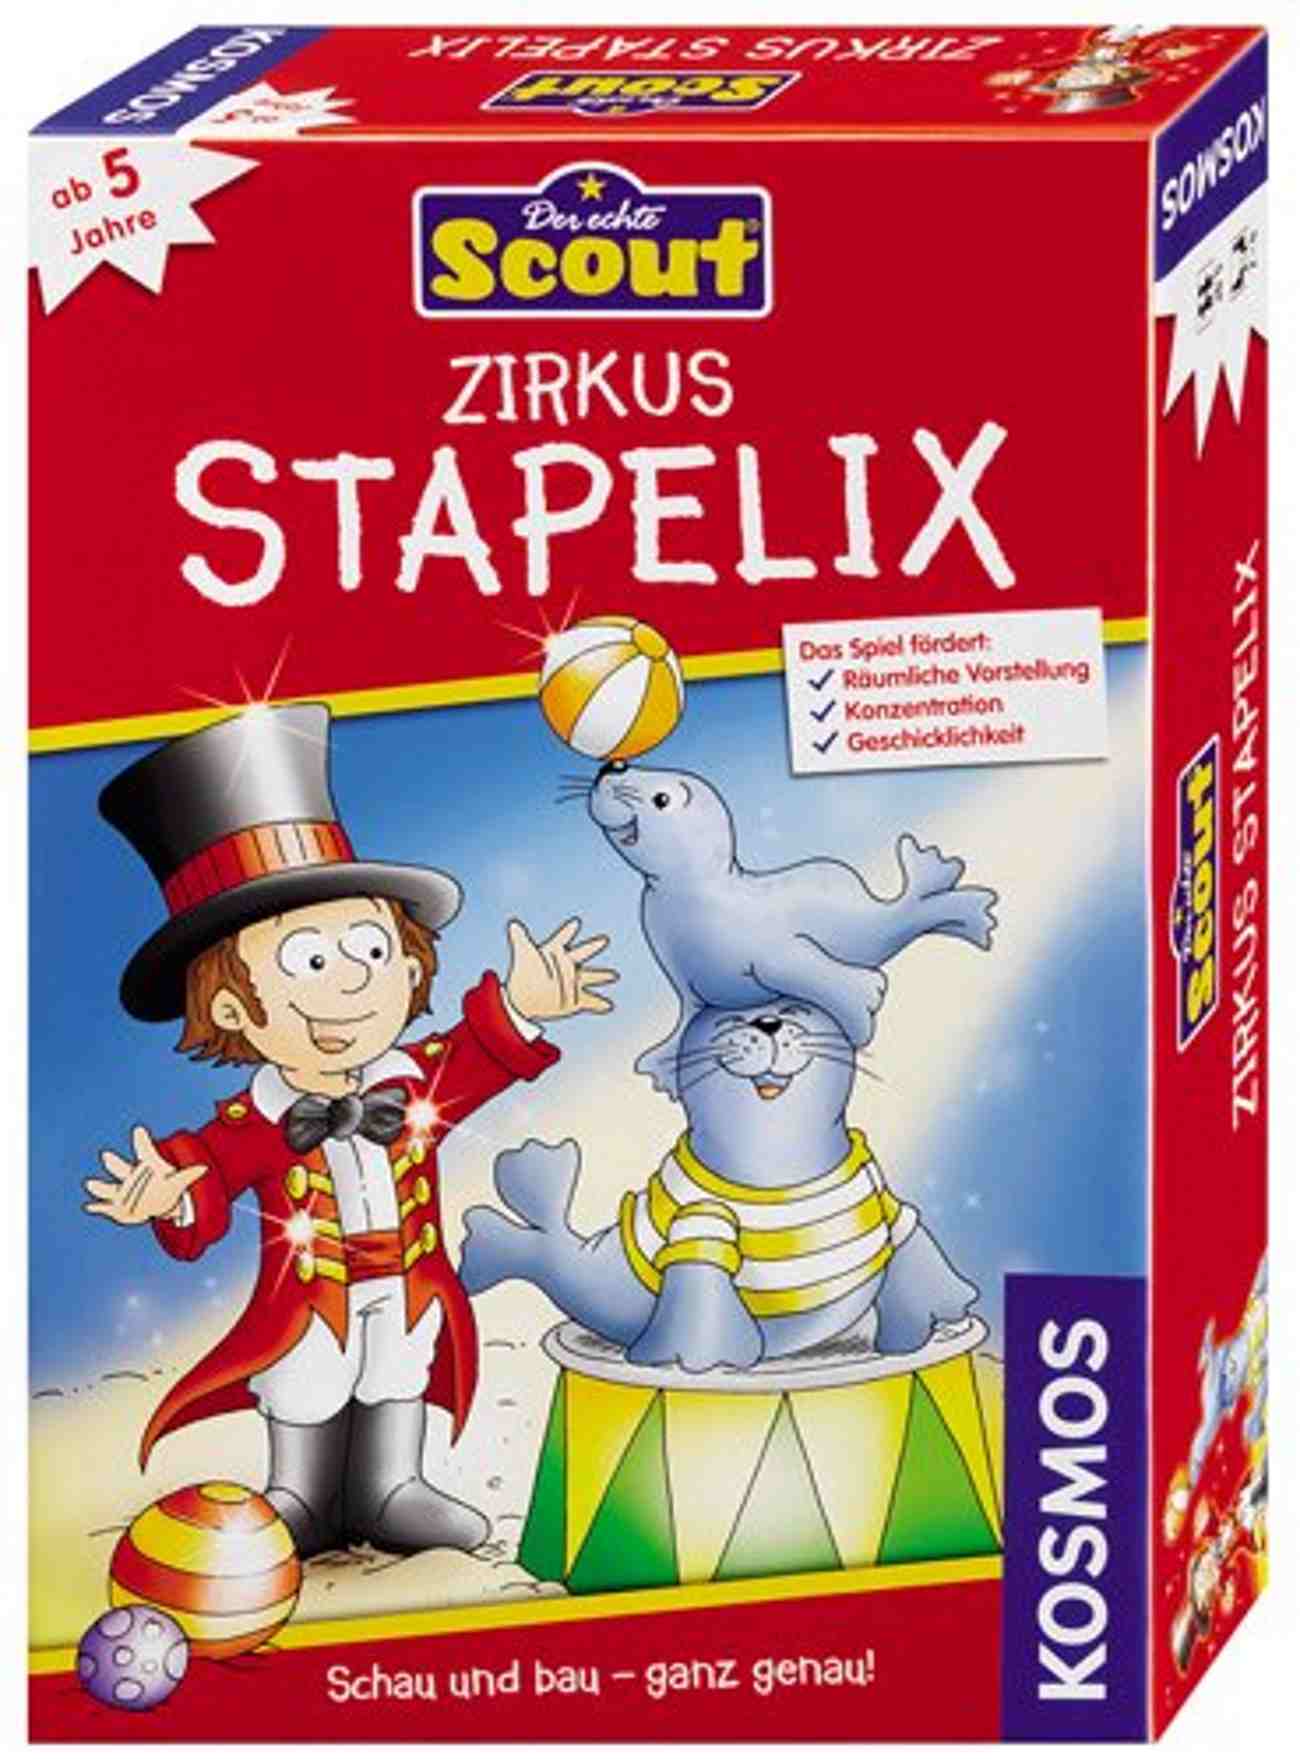 Zirkus Stapelix Spielanleitung – PDF Download 0 (0)